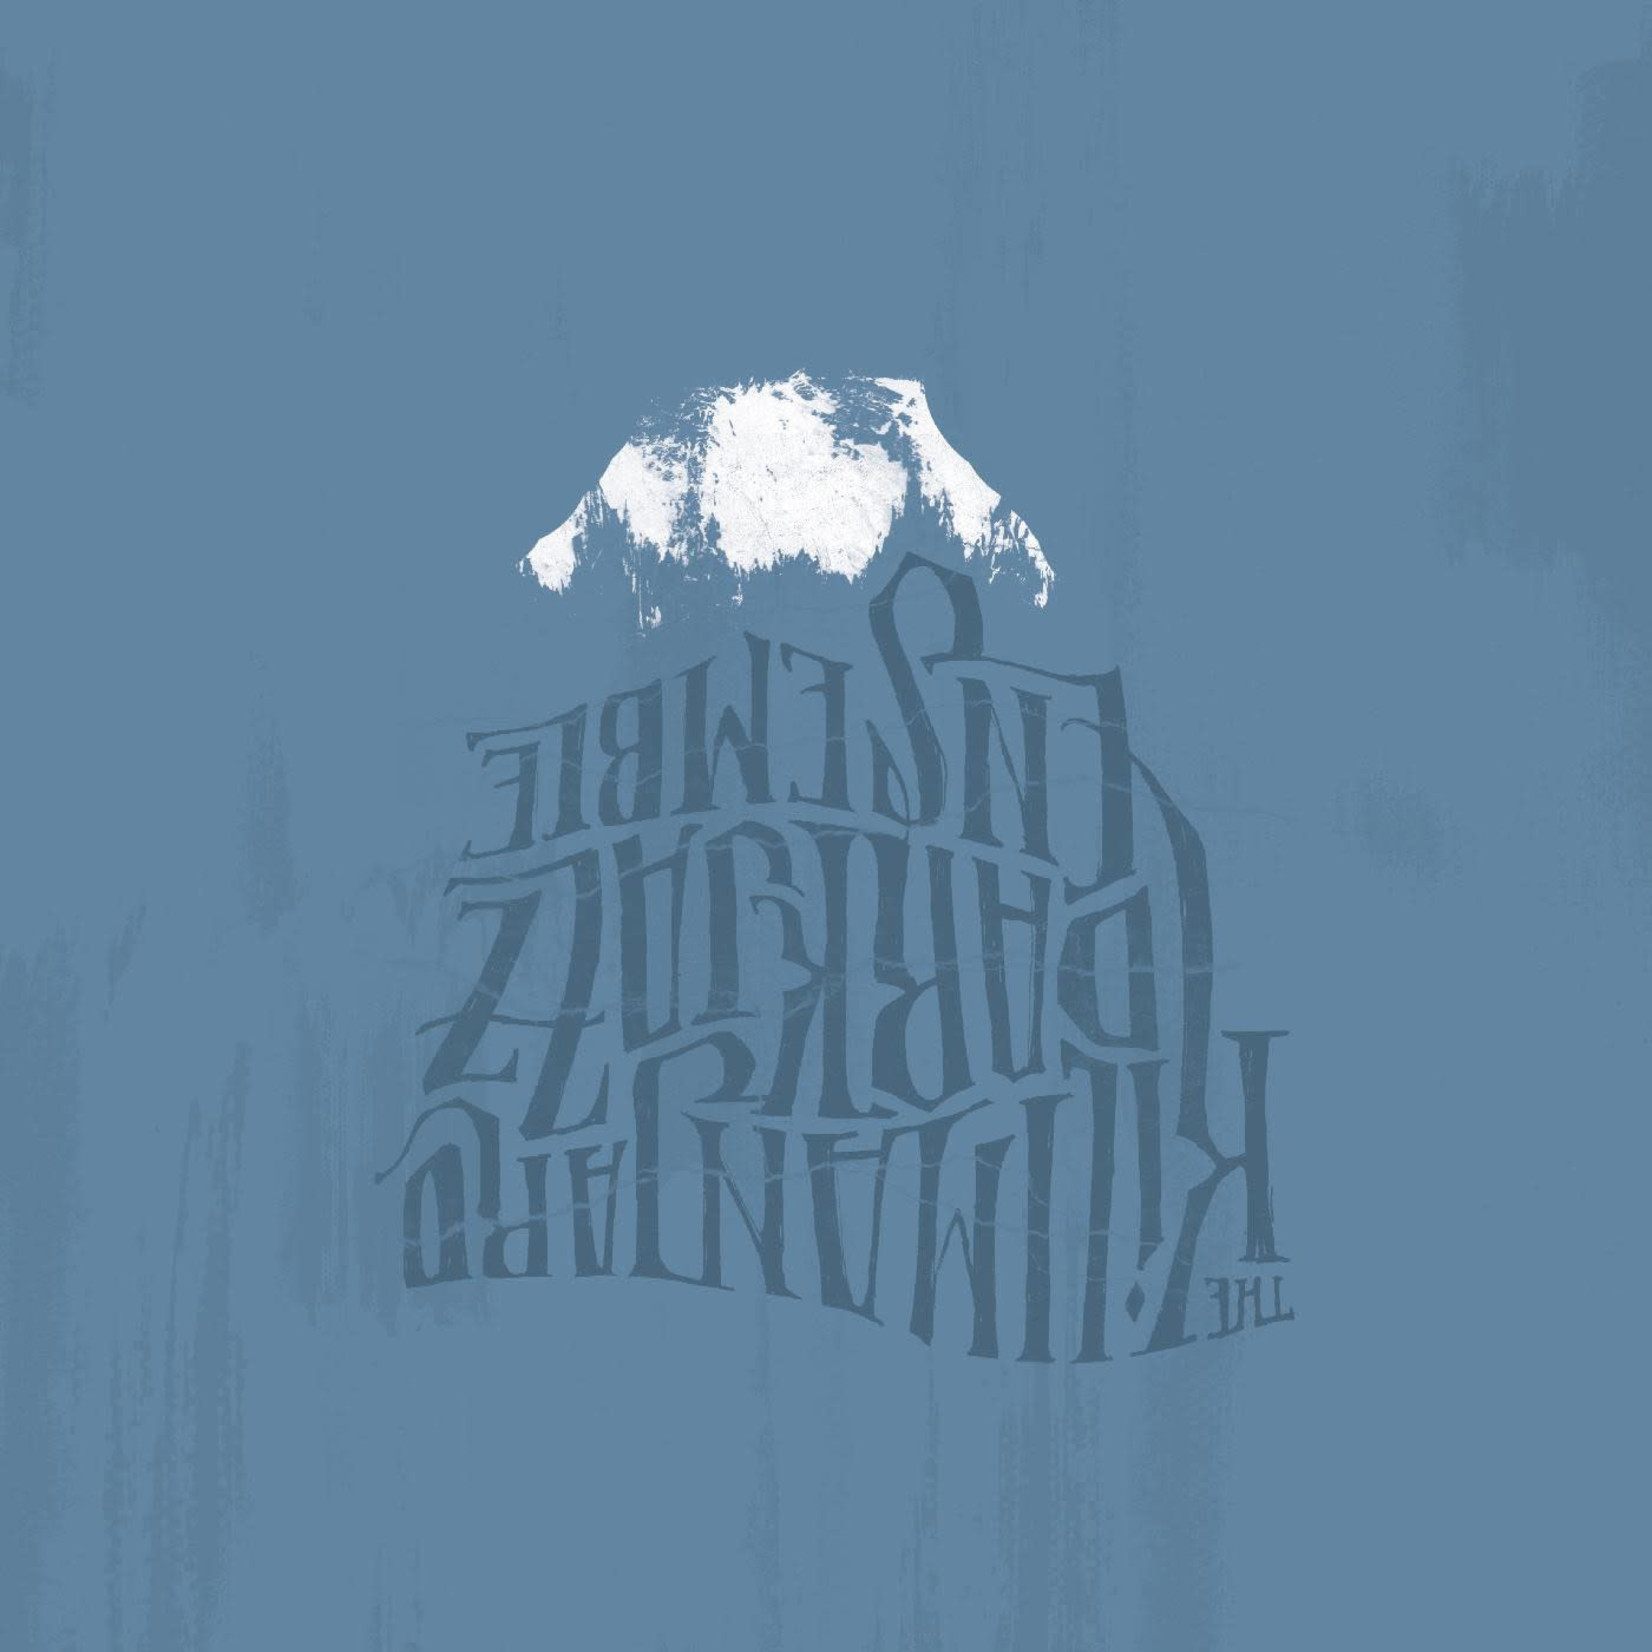 [New] Kilimanjaro Darkjazz Ensemble - The Kilimanjaro Darkjazz Ensemble (2LP)